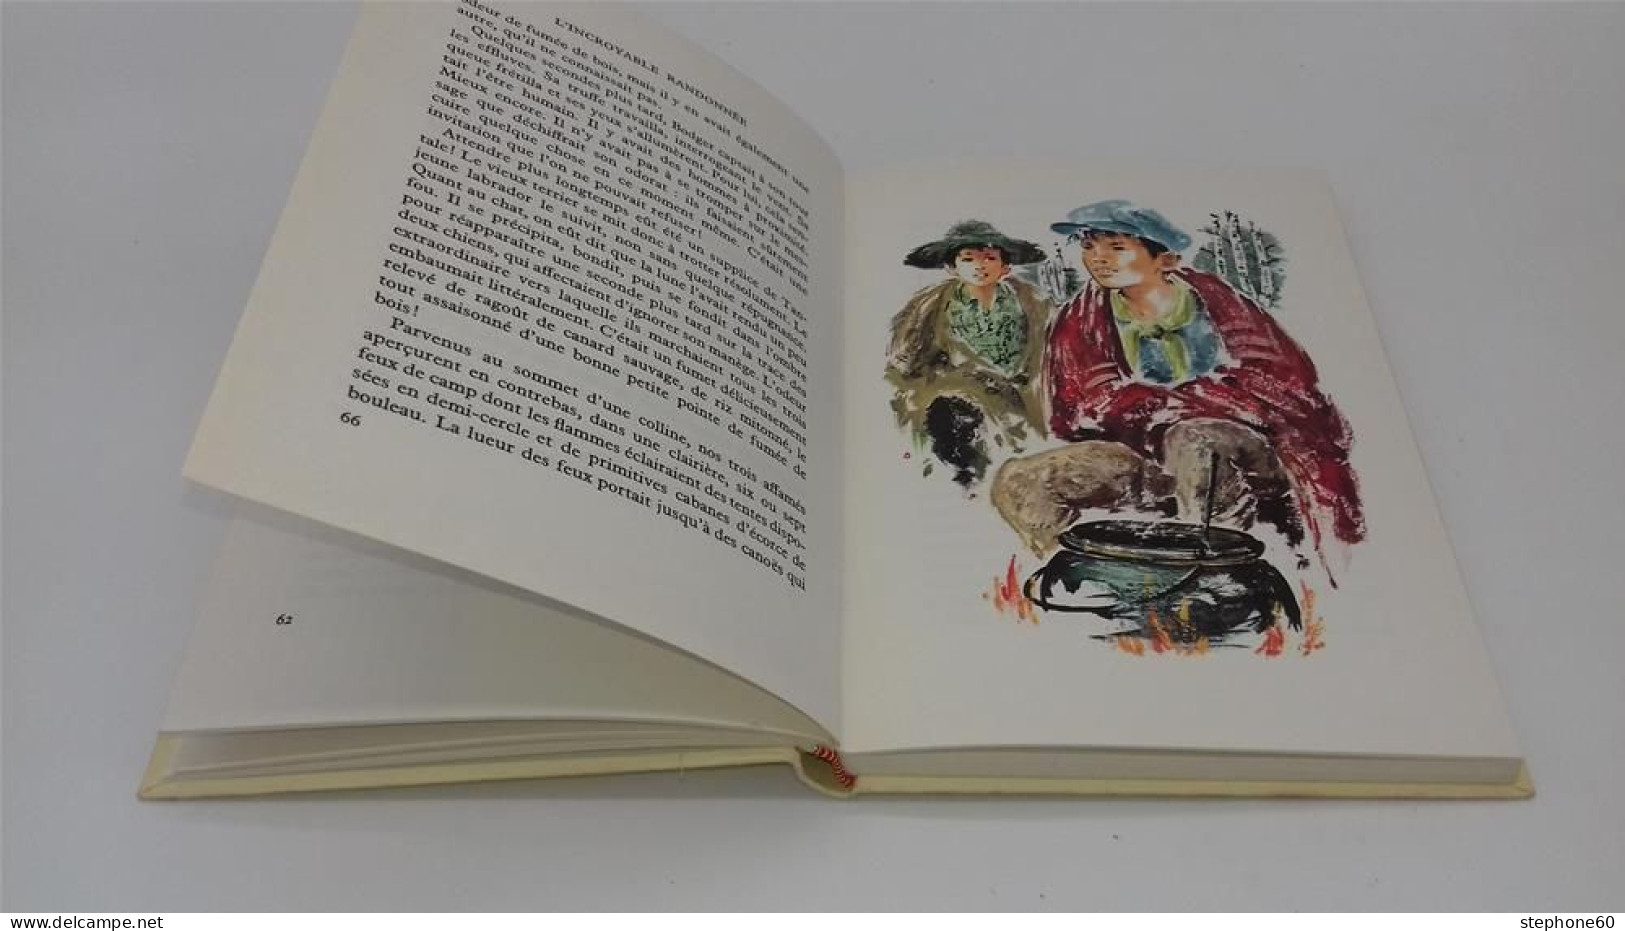 998 - (447) L'incroyable Randonnée - Sheila Burnford - Michel Gourlier 1965 - Rouge Et Or - Hachette